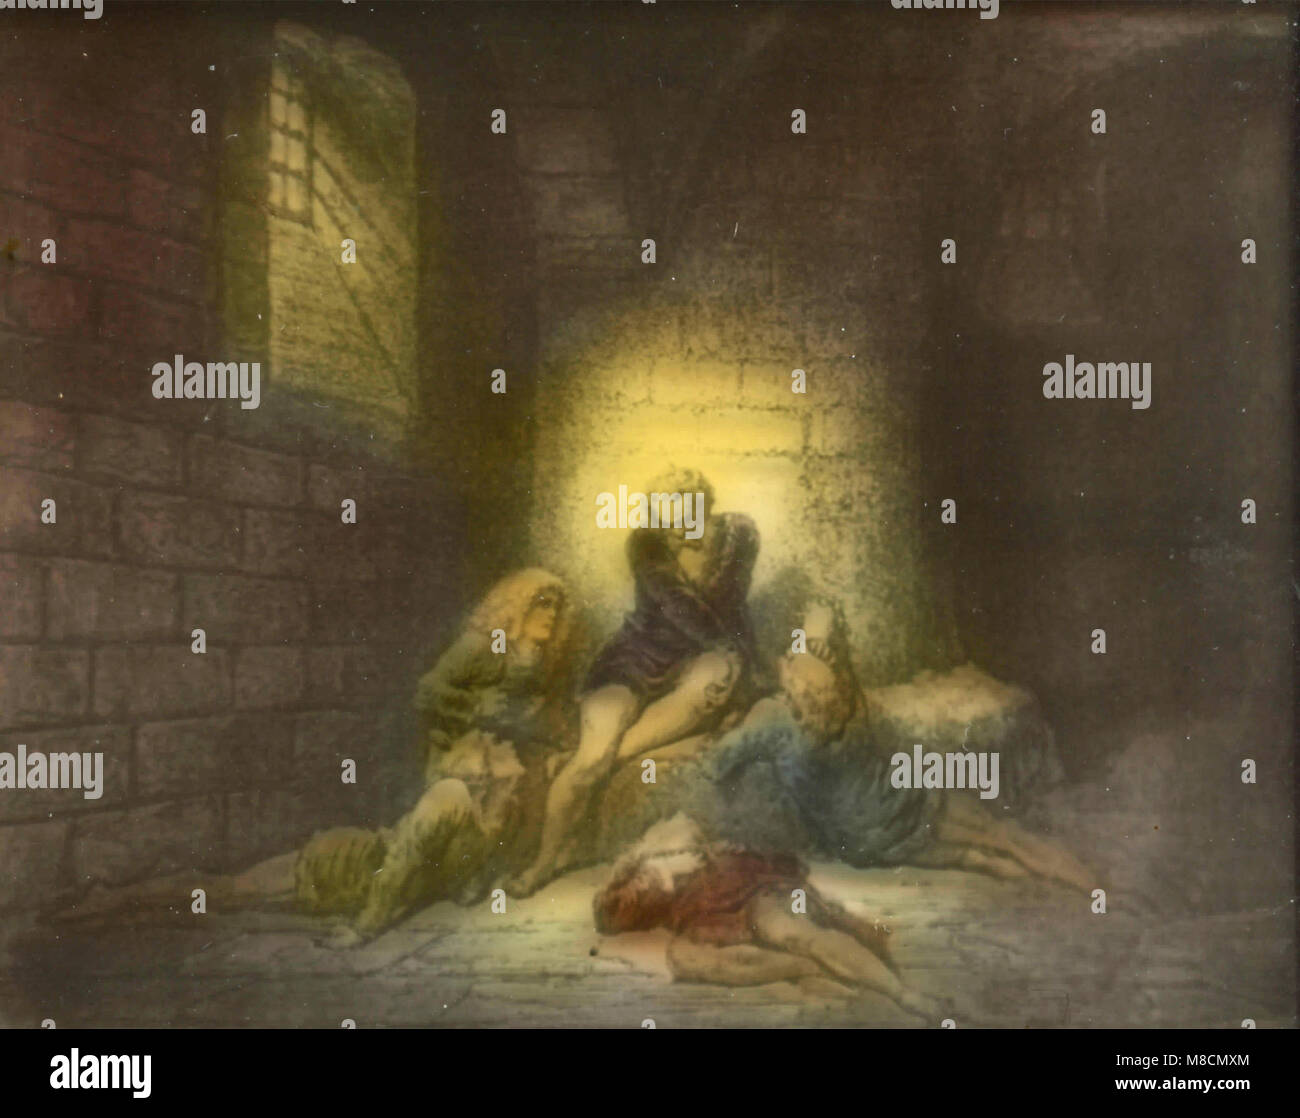 Il Conte Ugolino, Dante's Inferno illustration Stock Photo